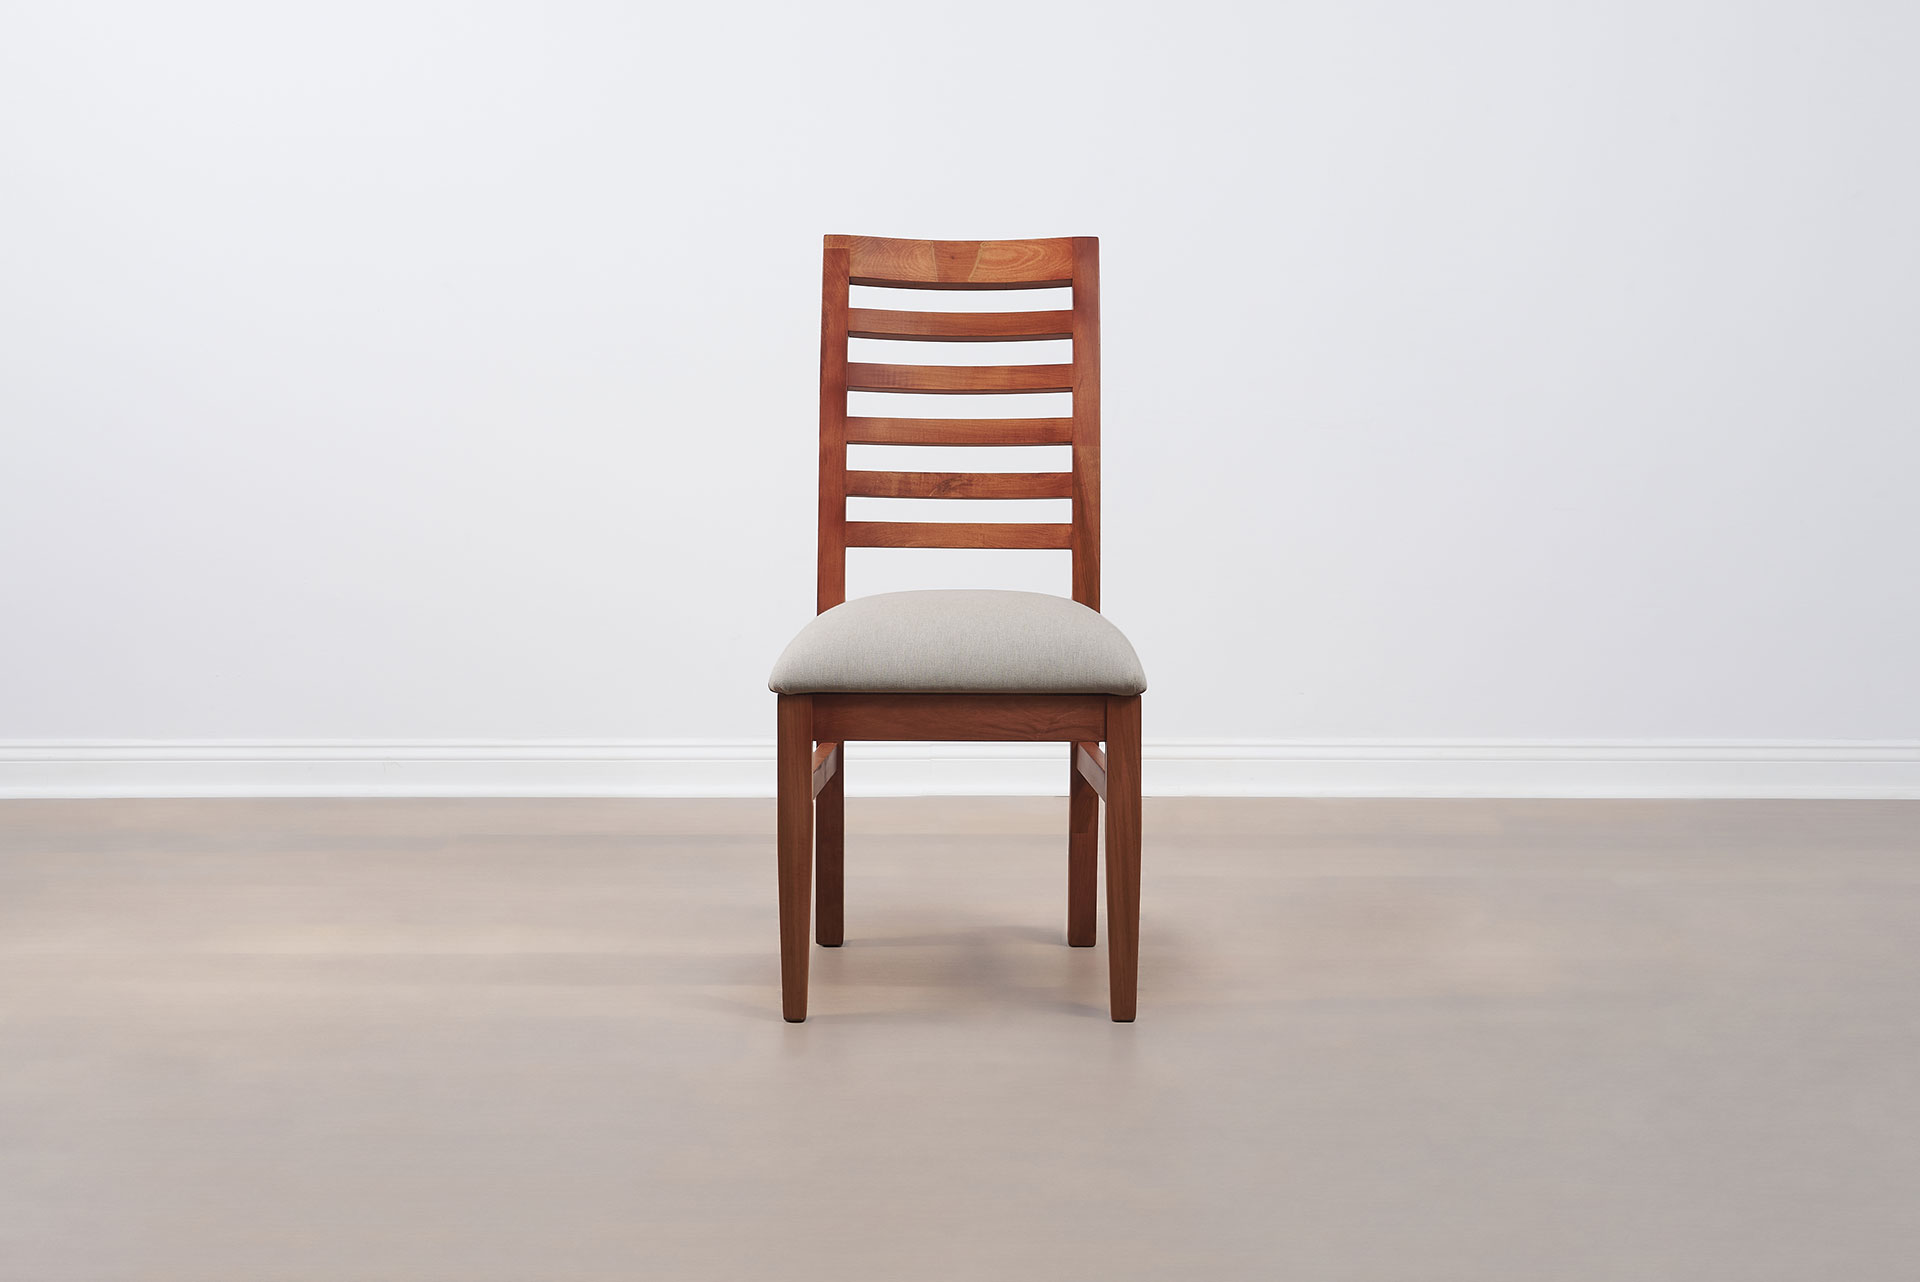 Muebles-Santander_Silla-Coyahue_4606_silla_madera_textil